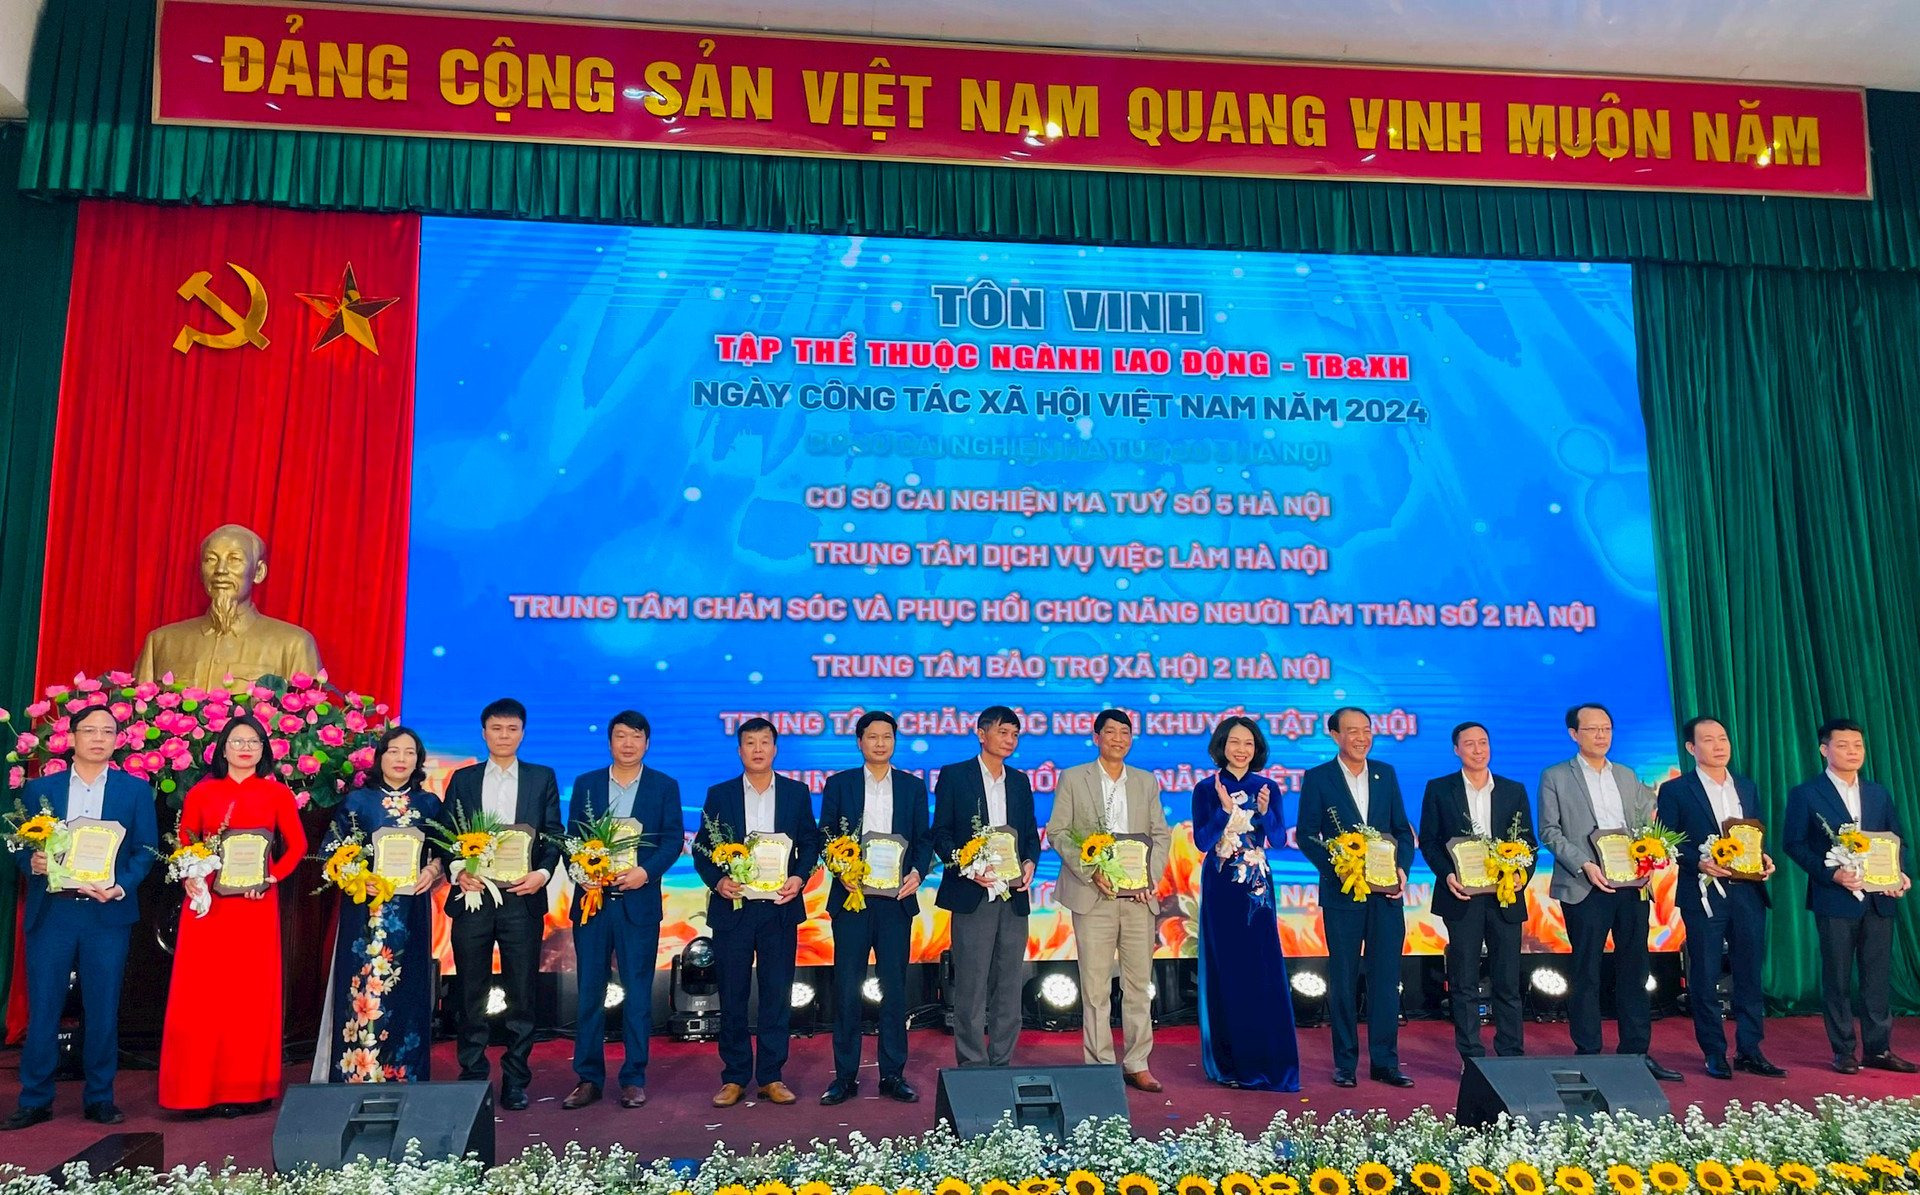 Phó Chủ tịch UBND thành phố Hà Nội Vũ Thu Hà trao bảng vàng tôn vinh dành tặng các tập thể thuộc Ngành Lao động - Thương binh và Xã hội thực hiện tốt công tác xã hội trên địa bàn Hà Nội.